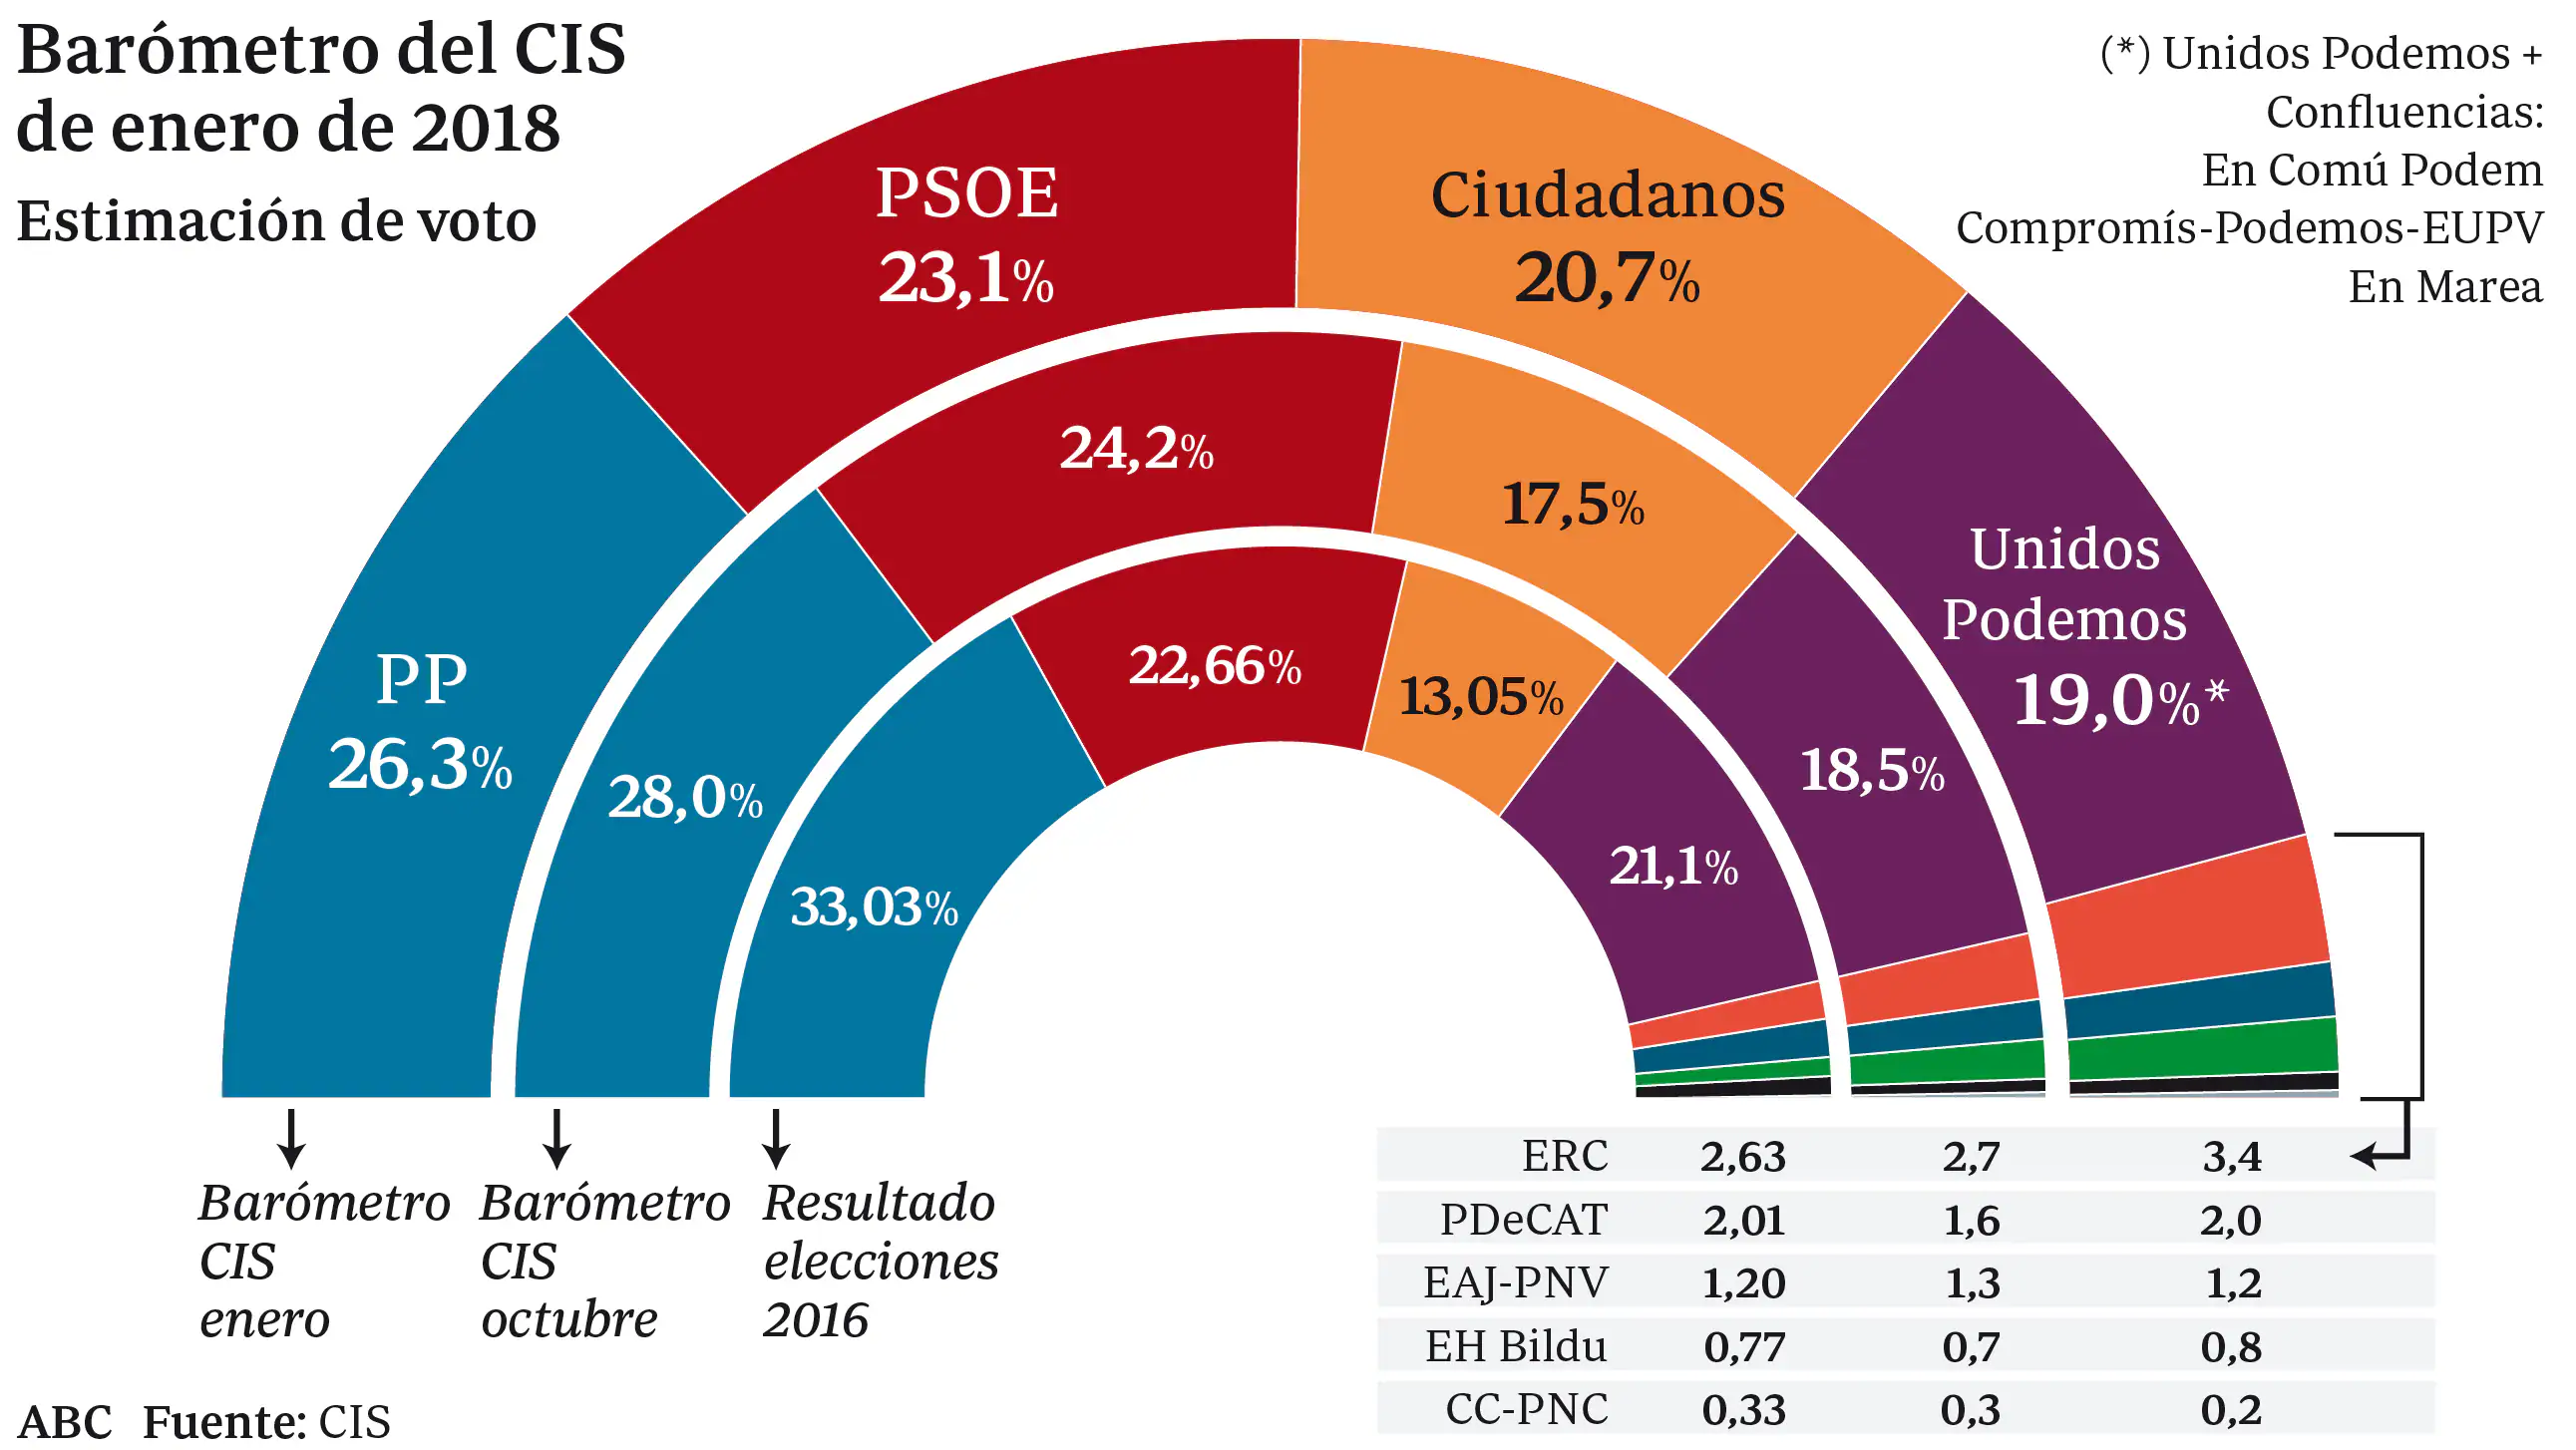 El PP y Ciudadanos confirman la hegemonía del centro derecha con un 47 por ciento de votos